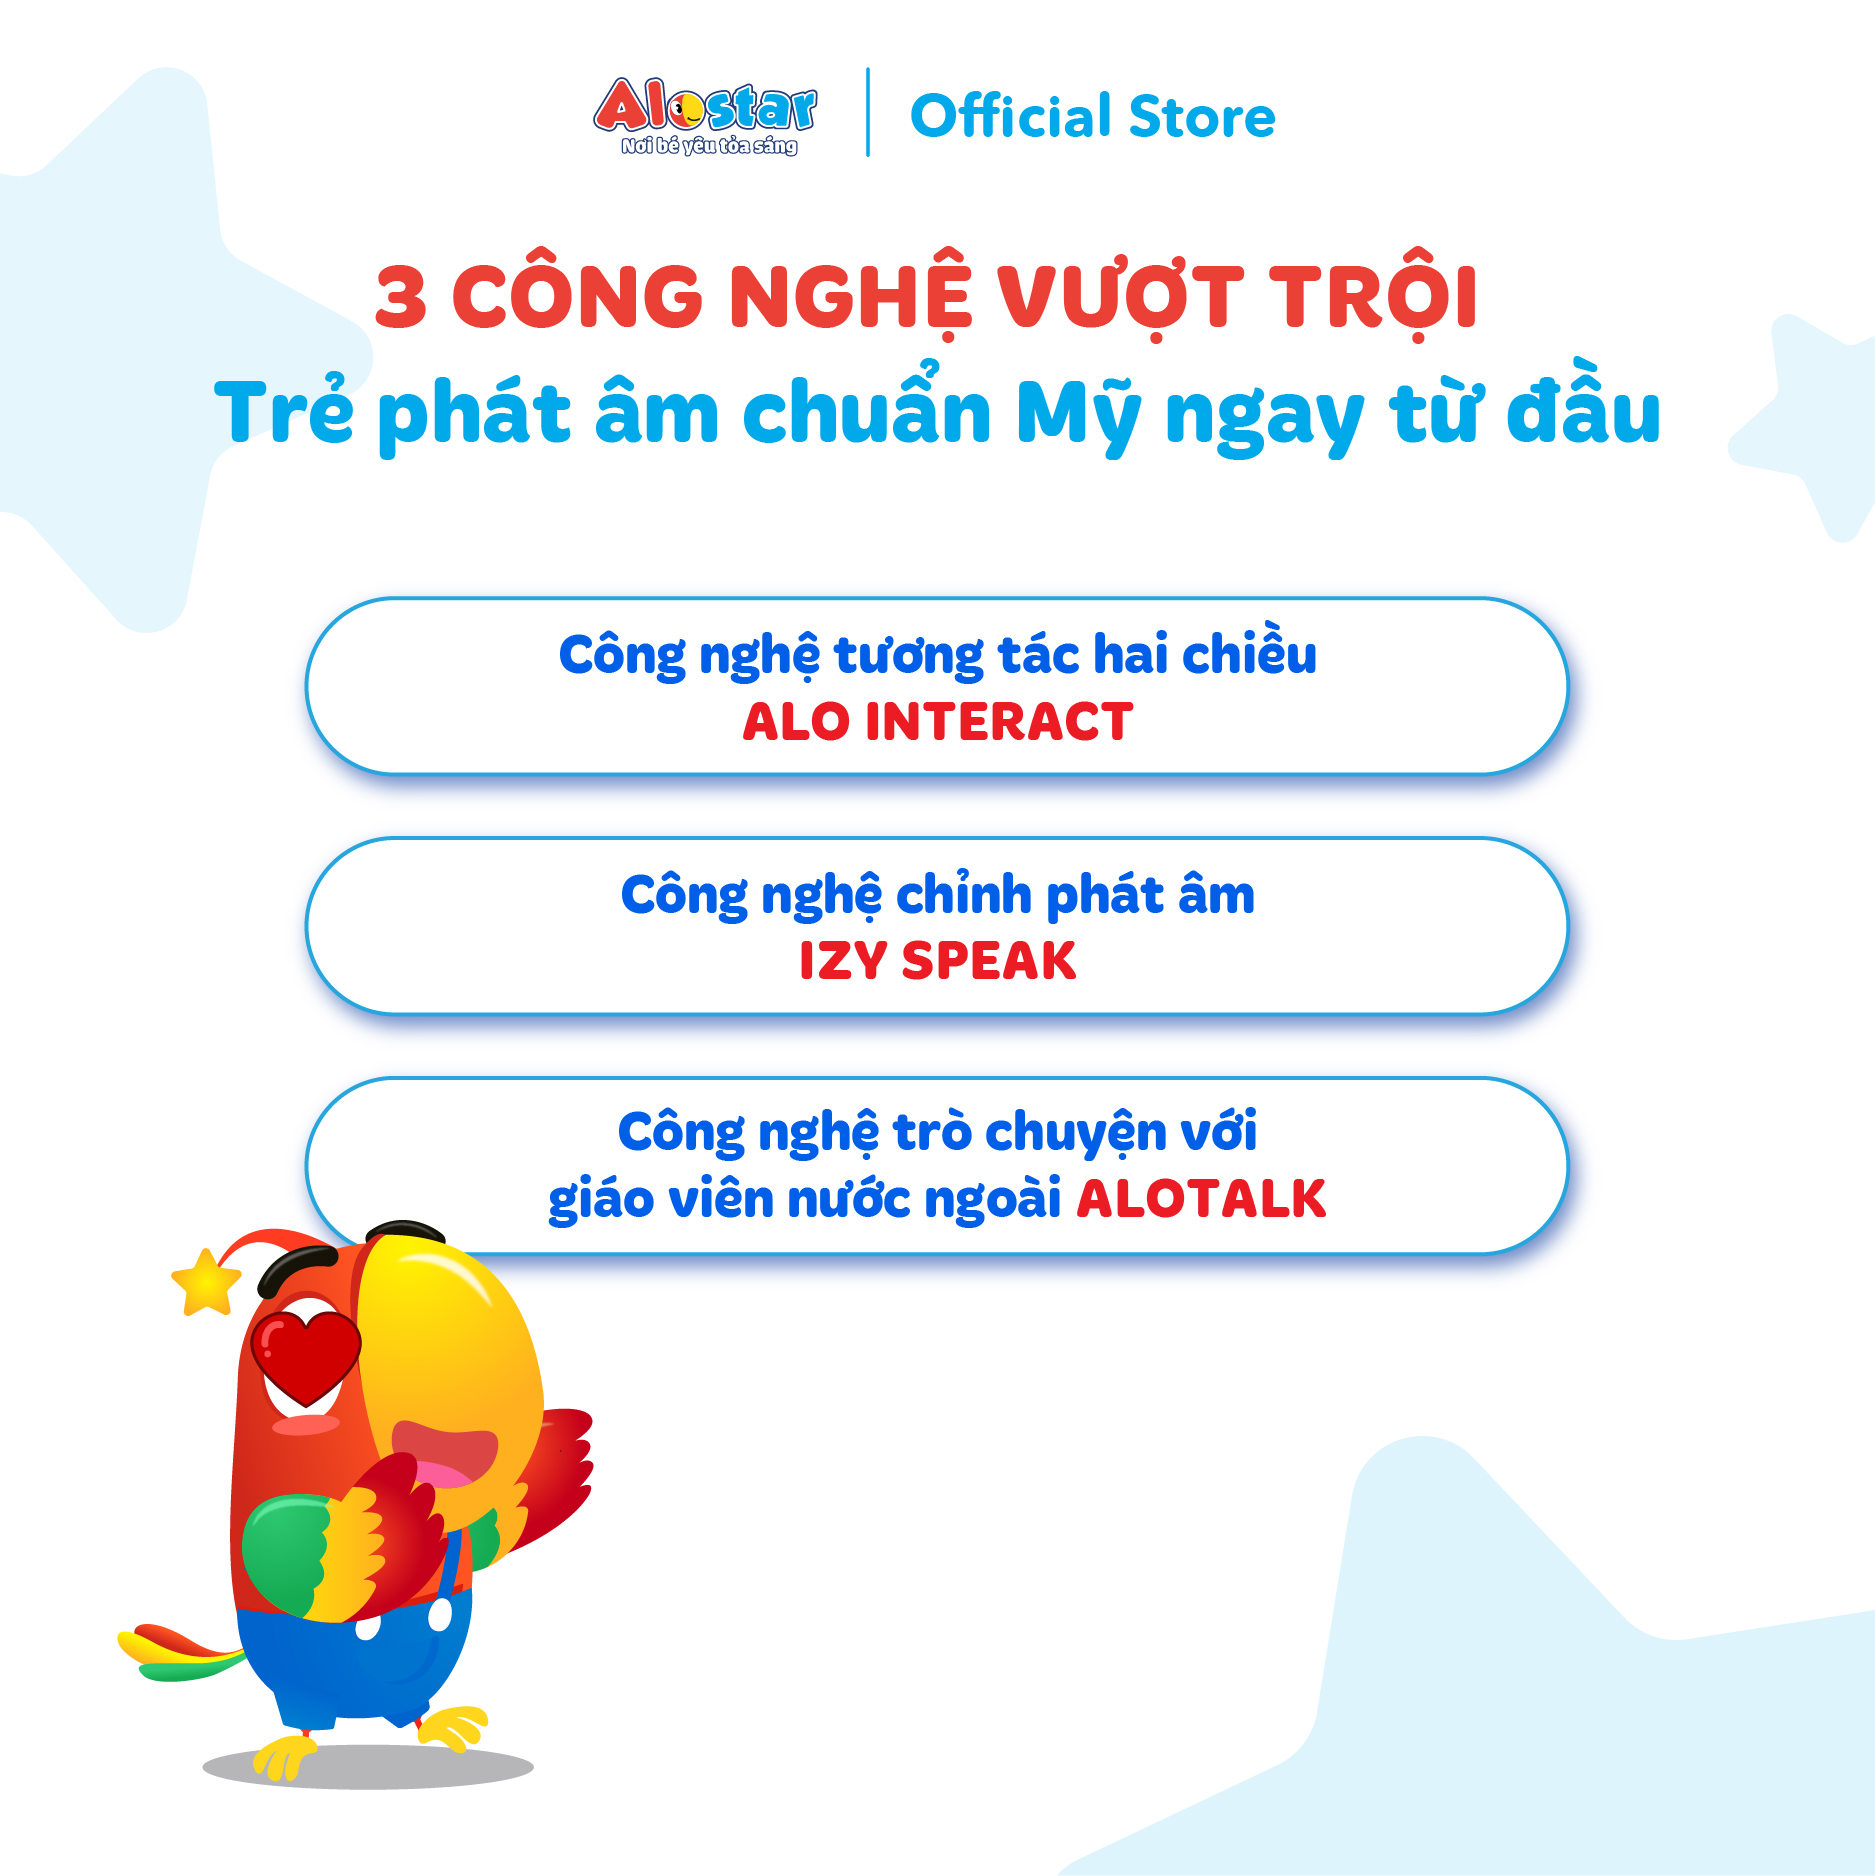 [Trọn đời] ALOSTAR - Mã kích hoạt khóa học tiếng Anh cho trẻ 2-7 tuổi Áp dụng online trên toàn quốc